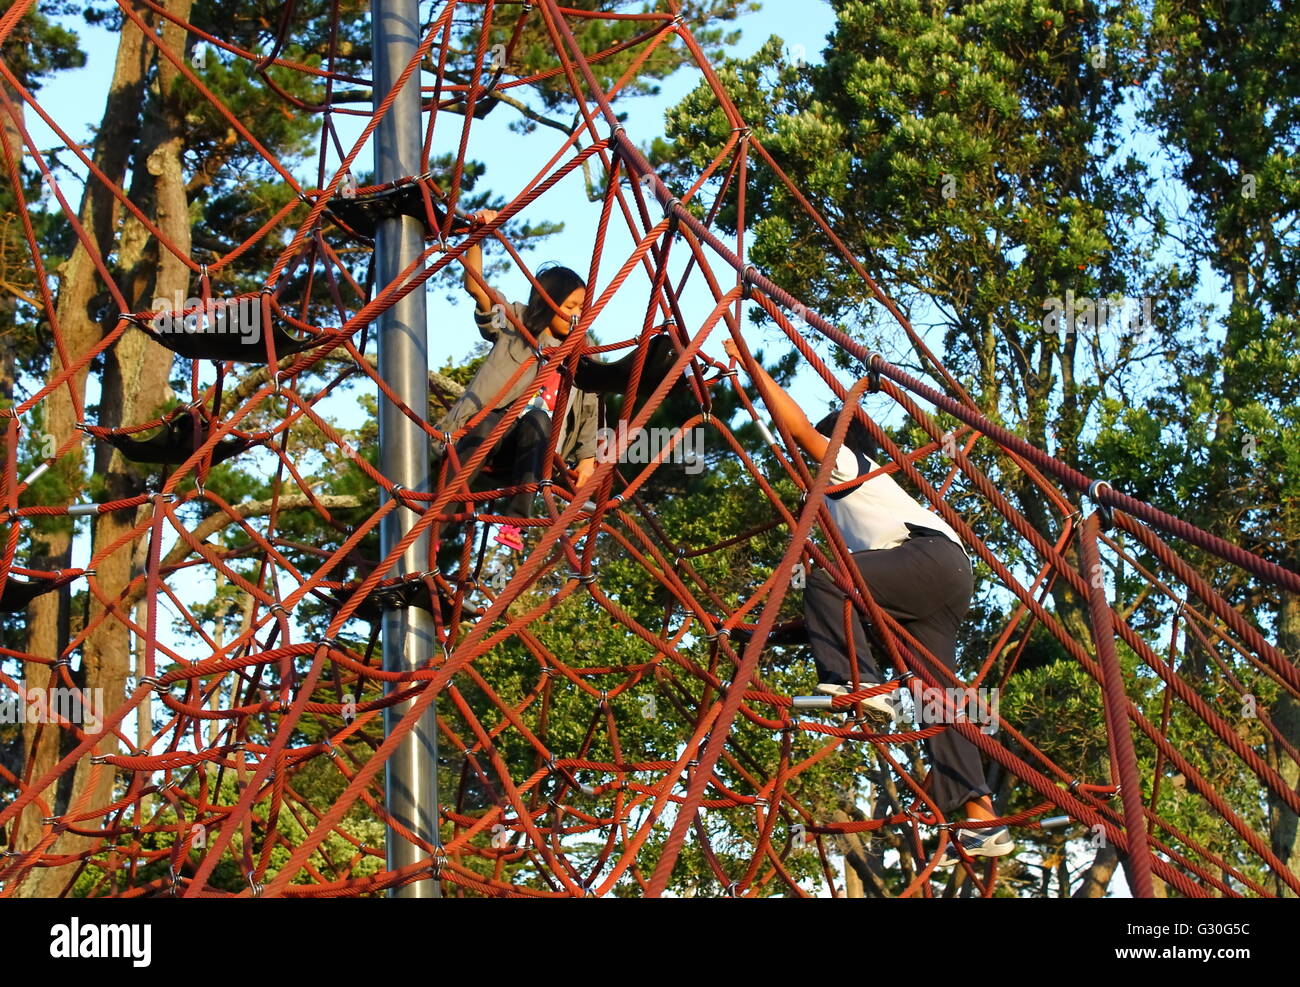 Les enfants sur une aire de l'escalade l'araignée Banque D'Images